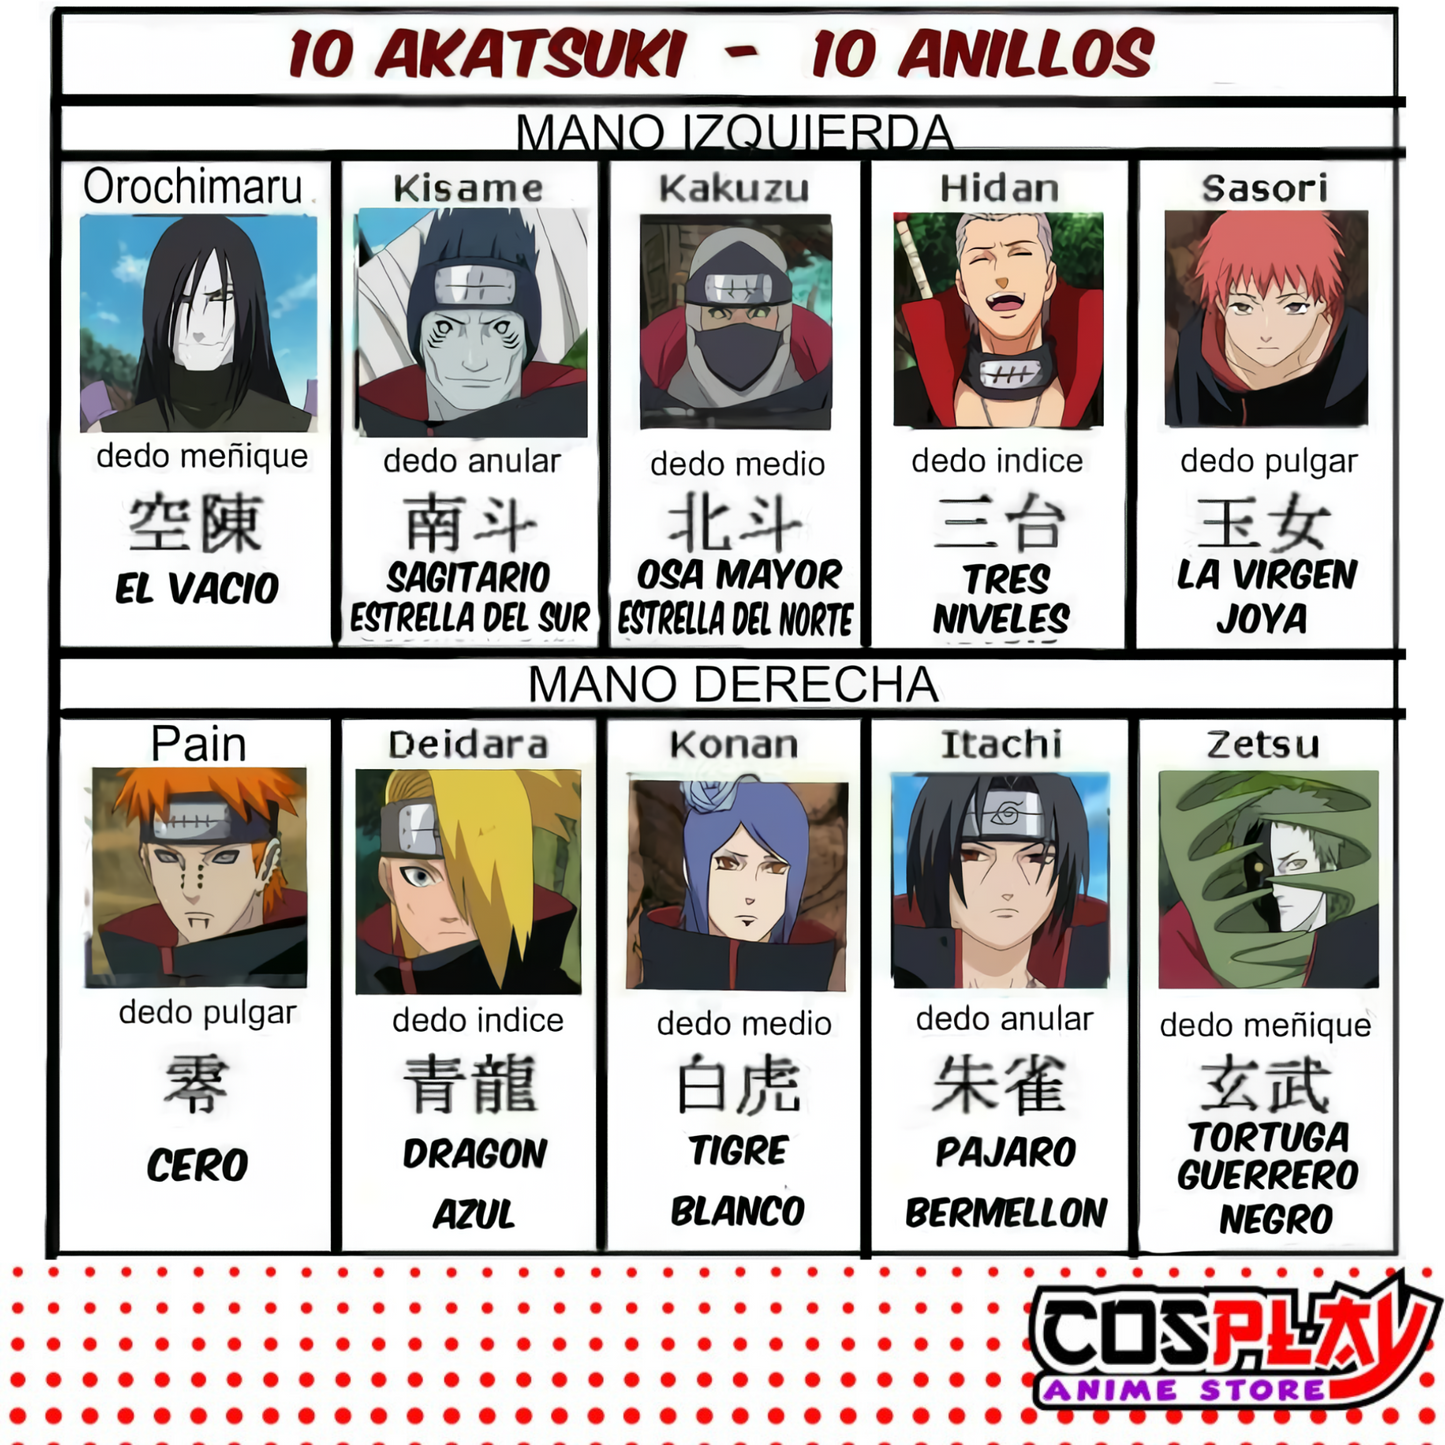 Anillo Akatsuki  Konan - Naruto Metal Dorado